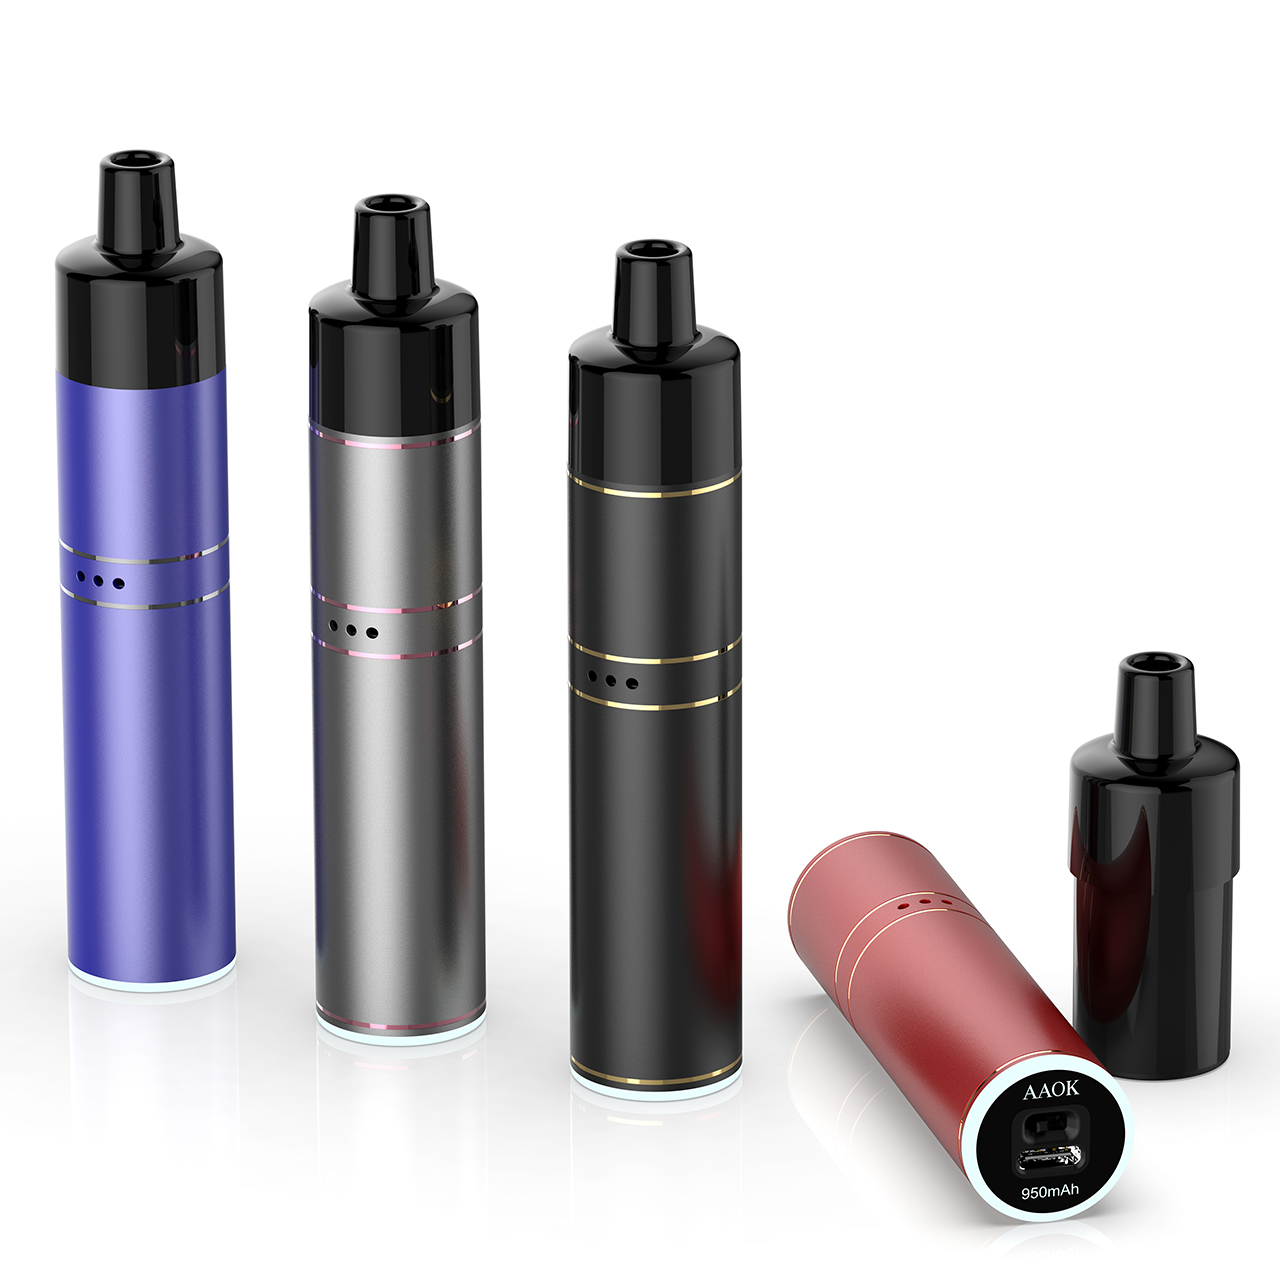 AAOK 2022 νέο προϊόν A26 νέες αφίξεις με δυνατότητα αντικατάστασης κιτ E Cigarette